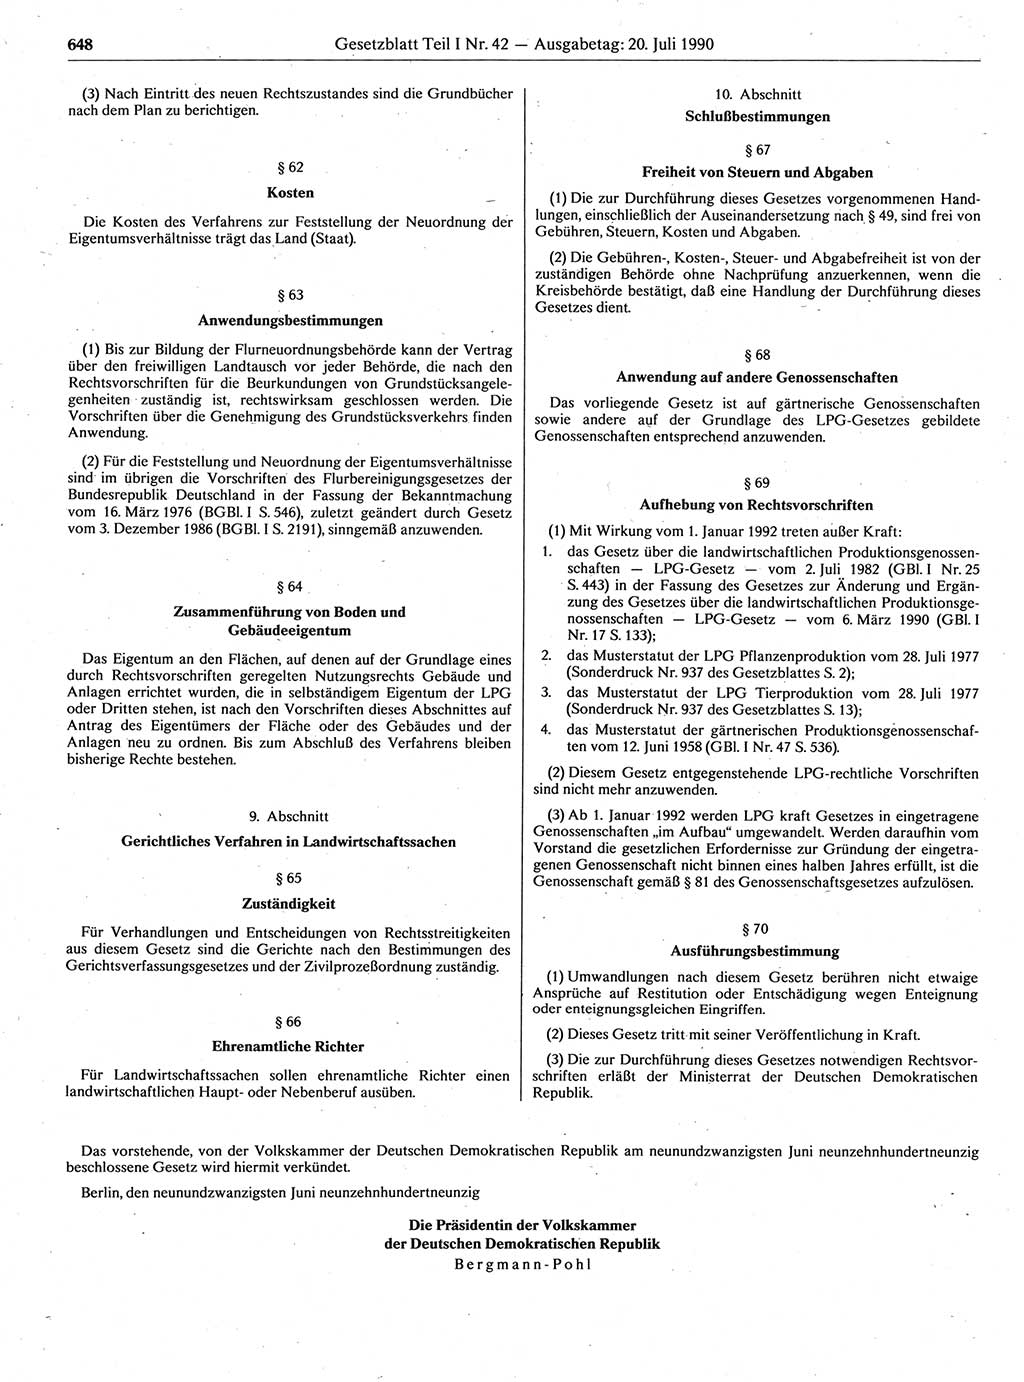 Gesetzblatt (GBl.) der Deutschen Demokratischen Republik (DDR) Teil Ⅰ 1990, Seite 648 (GBl. DDR Ⅰ 1990, S. 648)